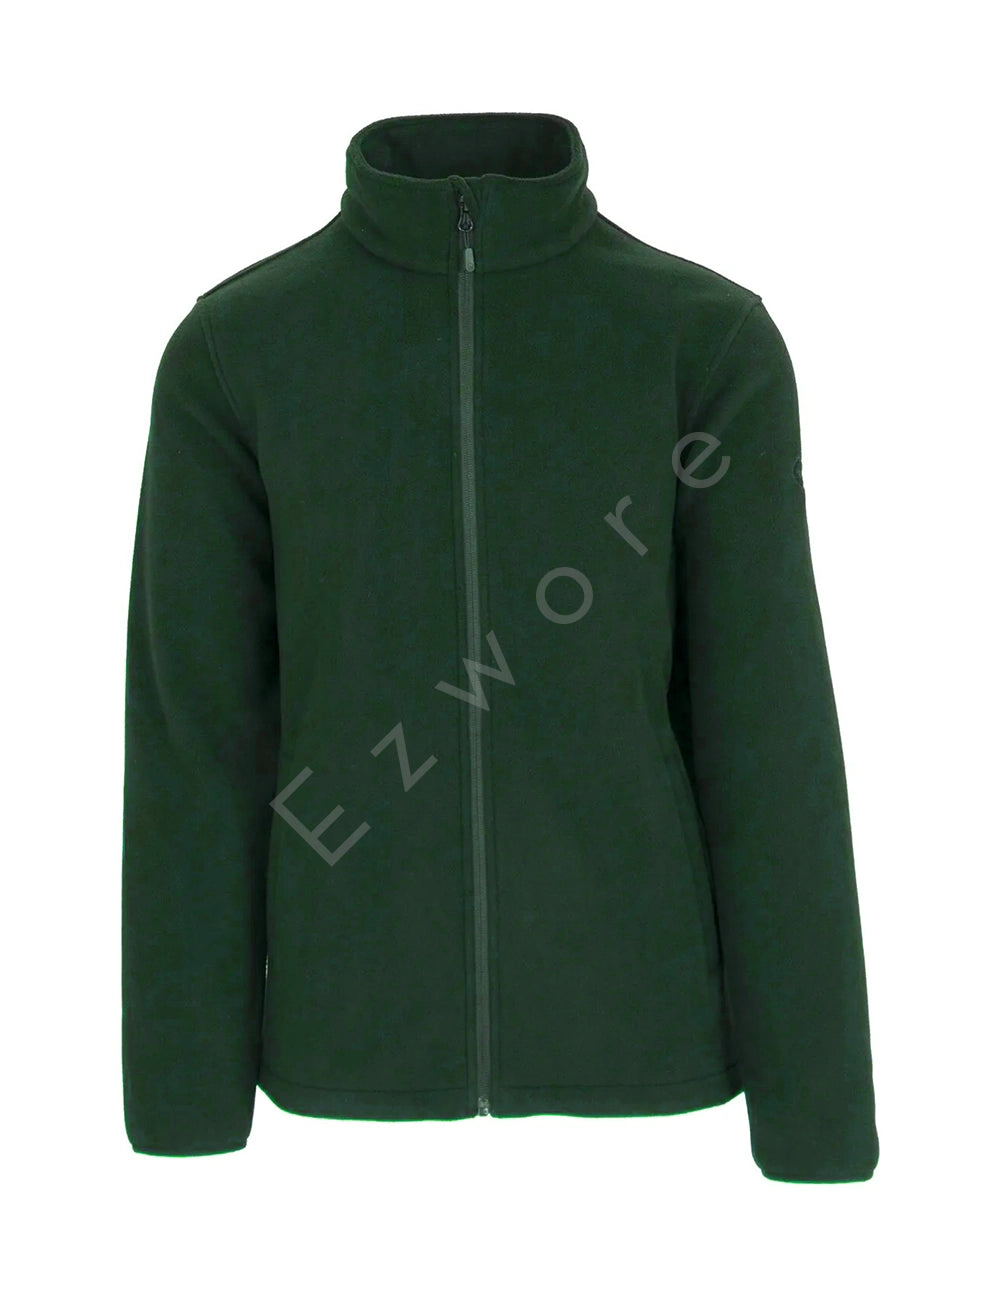 Pareman Melange Green Fleece Jacket